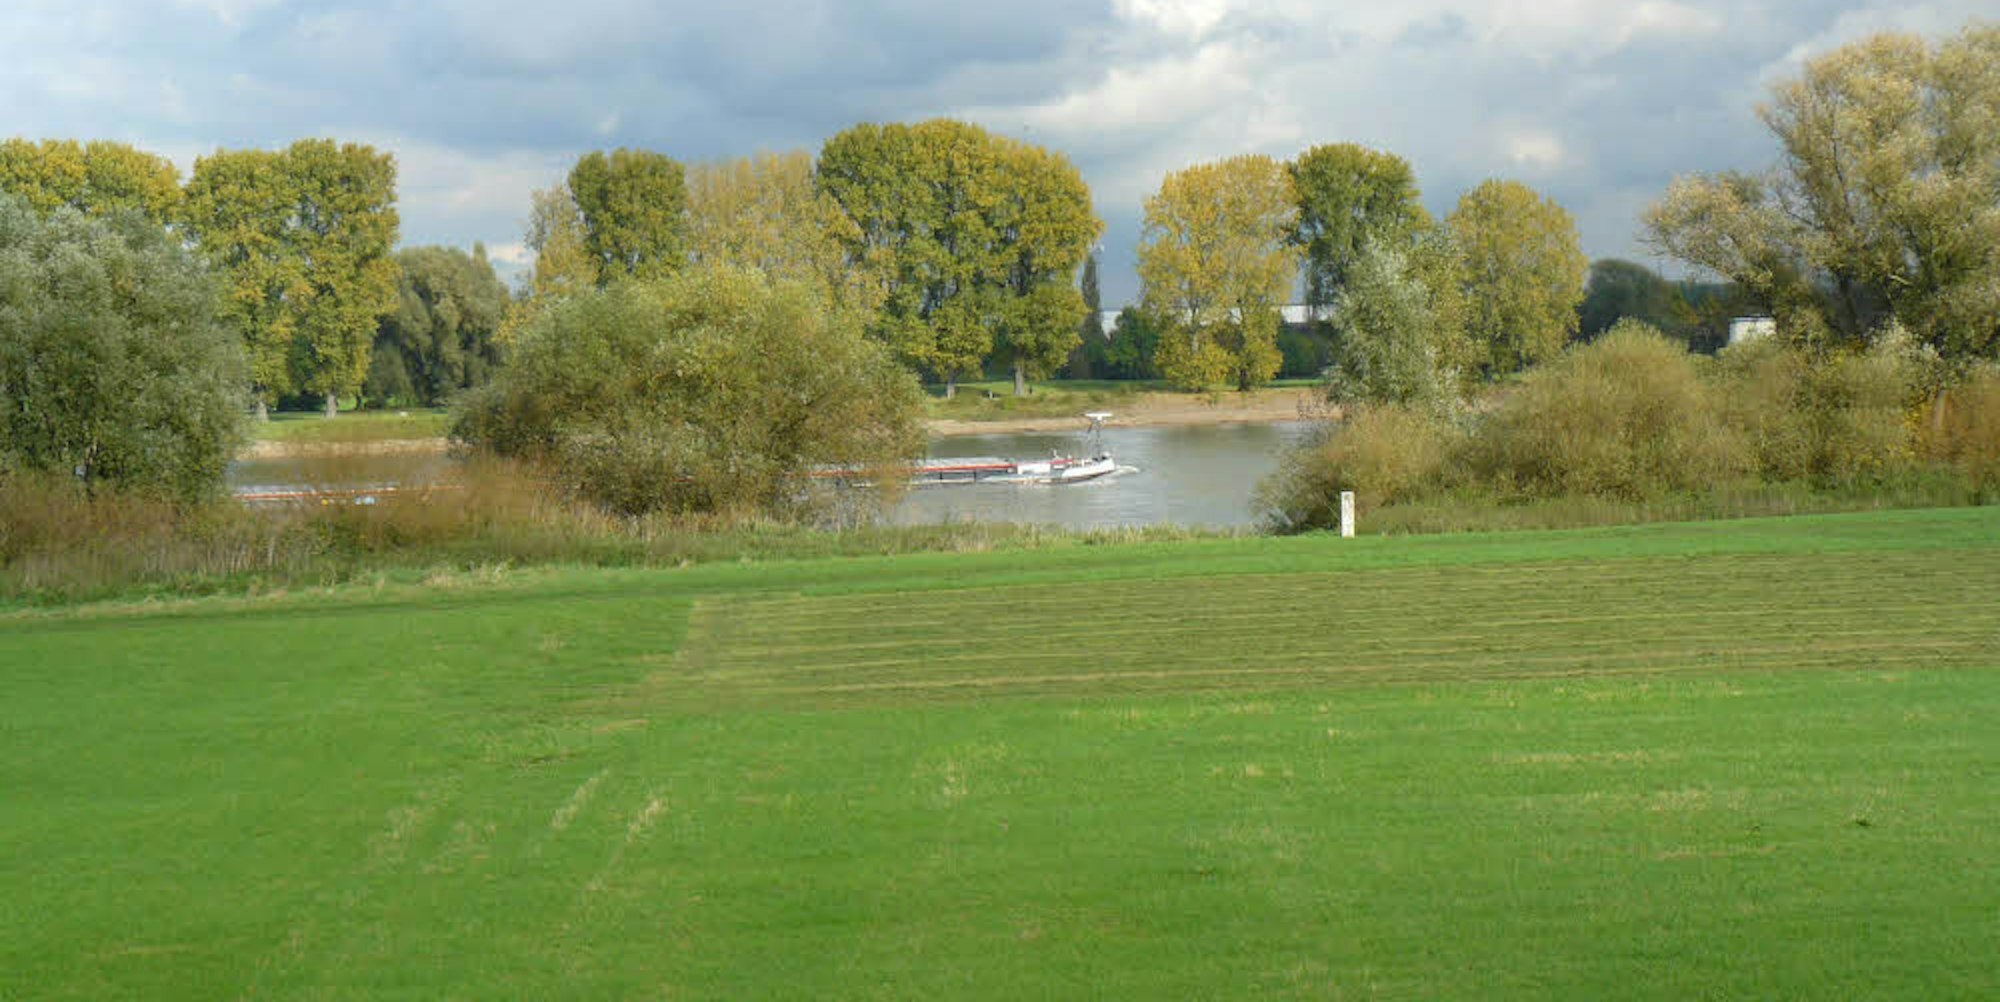 Das Rheinufer bietet gerade im Herbst ein malerisches Bild, doch die Idylle ist bedroht, weil viele Besucher auf die empfindliche Natur keine Rücksicht nehmen.